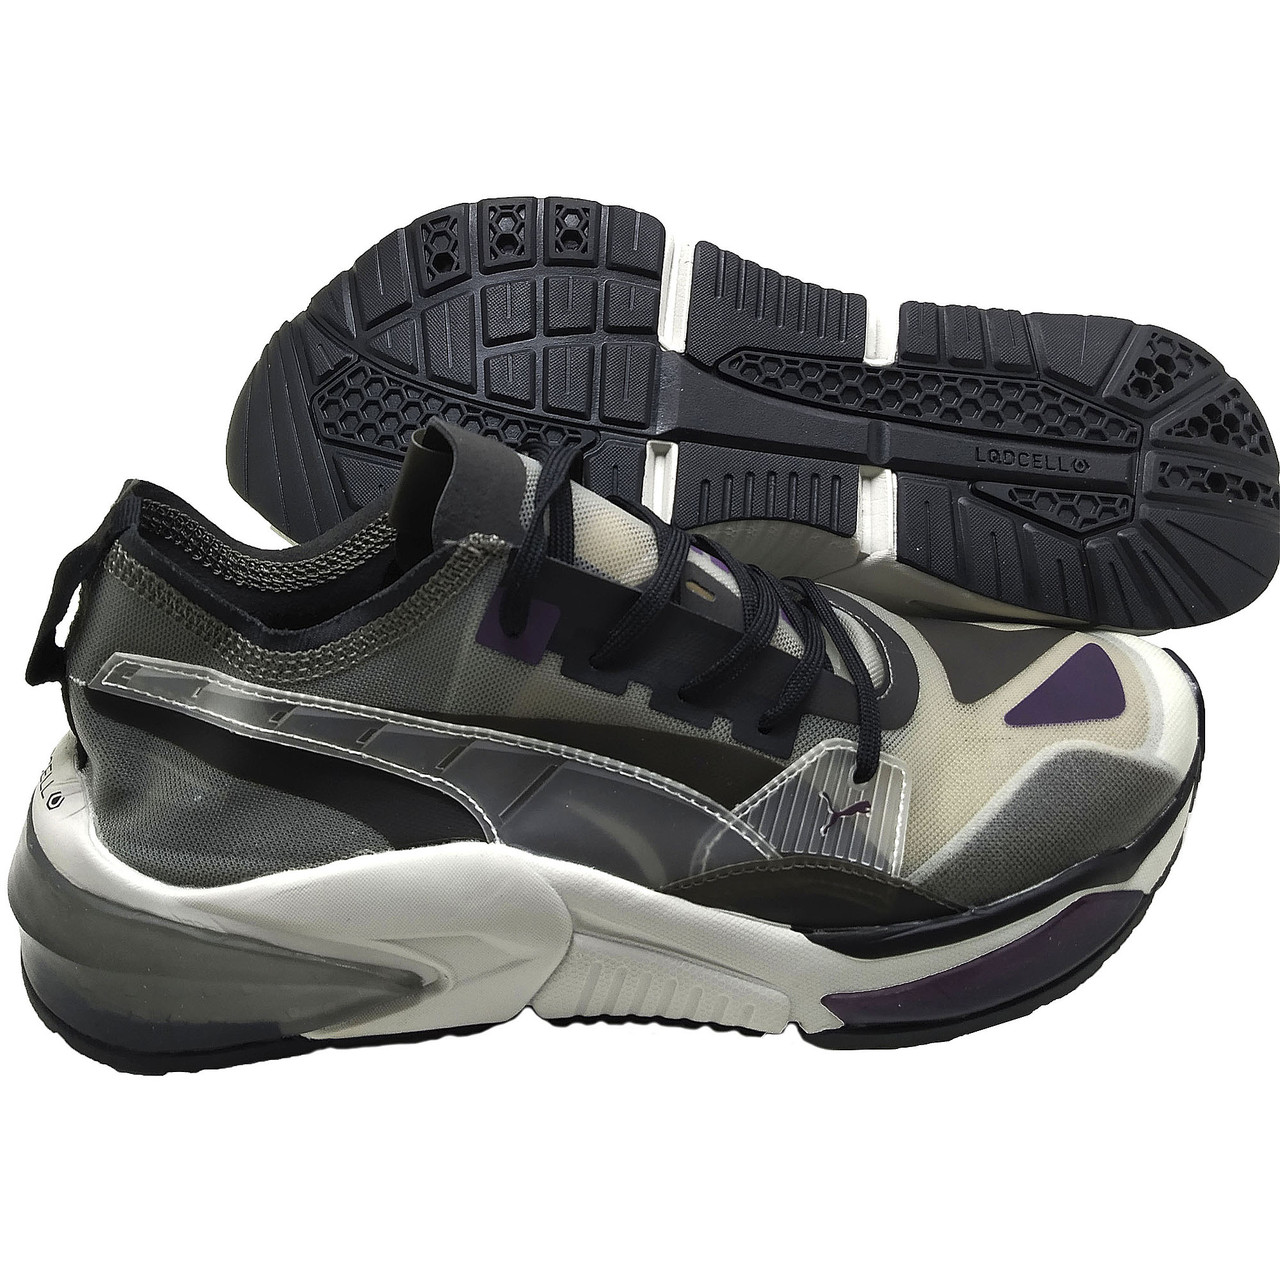 Прозорі кросівки чоловічі в стилі Puma LQD CELL для бігу і активного відпочинку